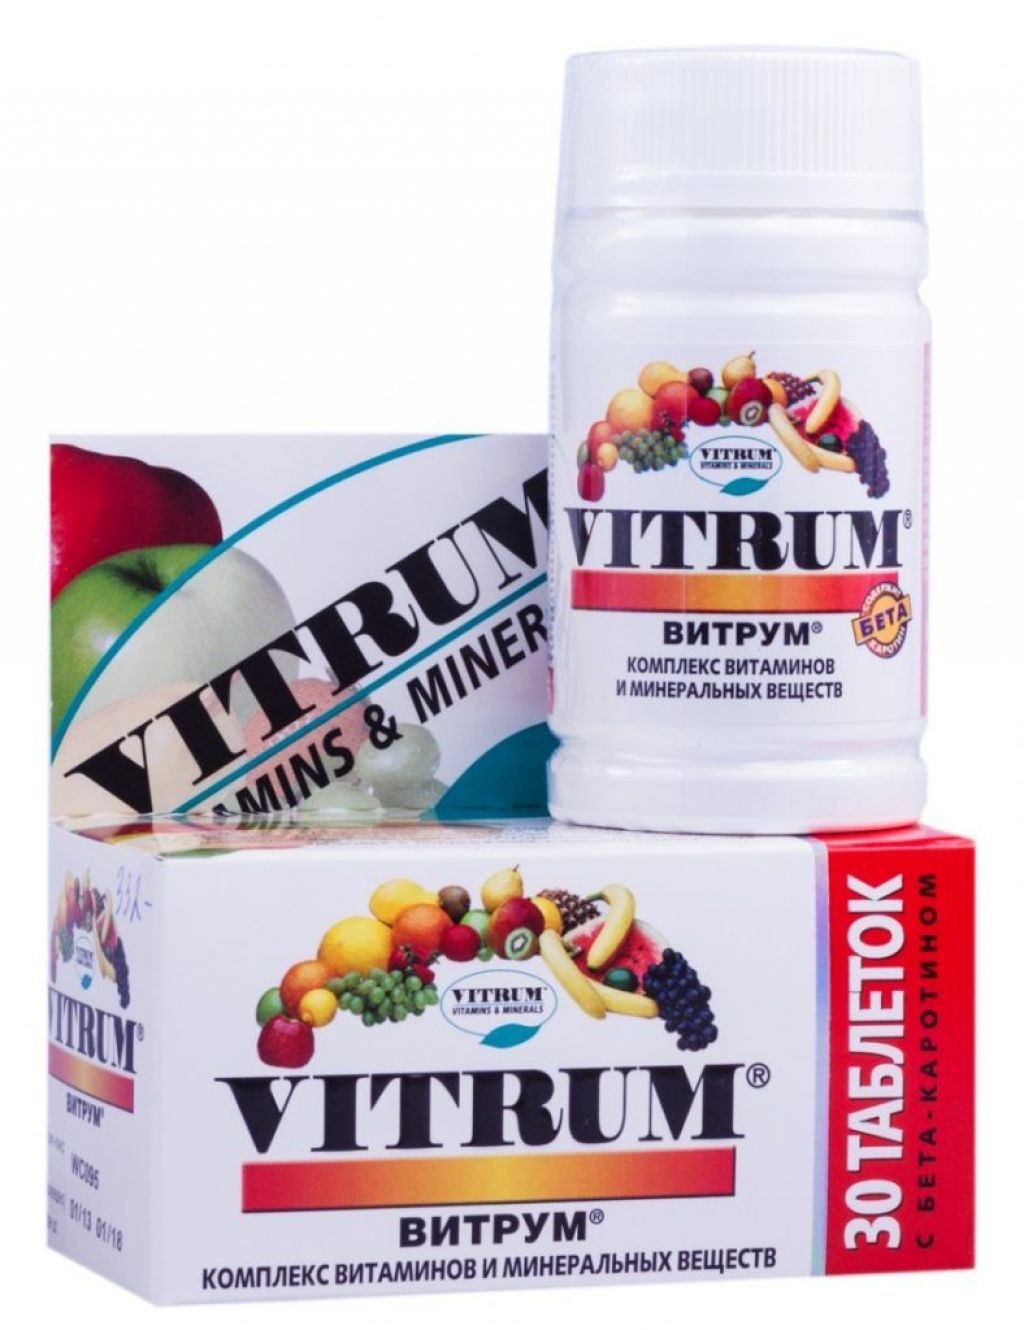 Витамины витрум для мужчин. Витамины витрум Центури. Витрум комплекс витаминов. Витамины комплексные витрум витрум. Витрум витамины для мужчин 50+.